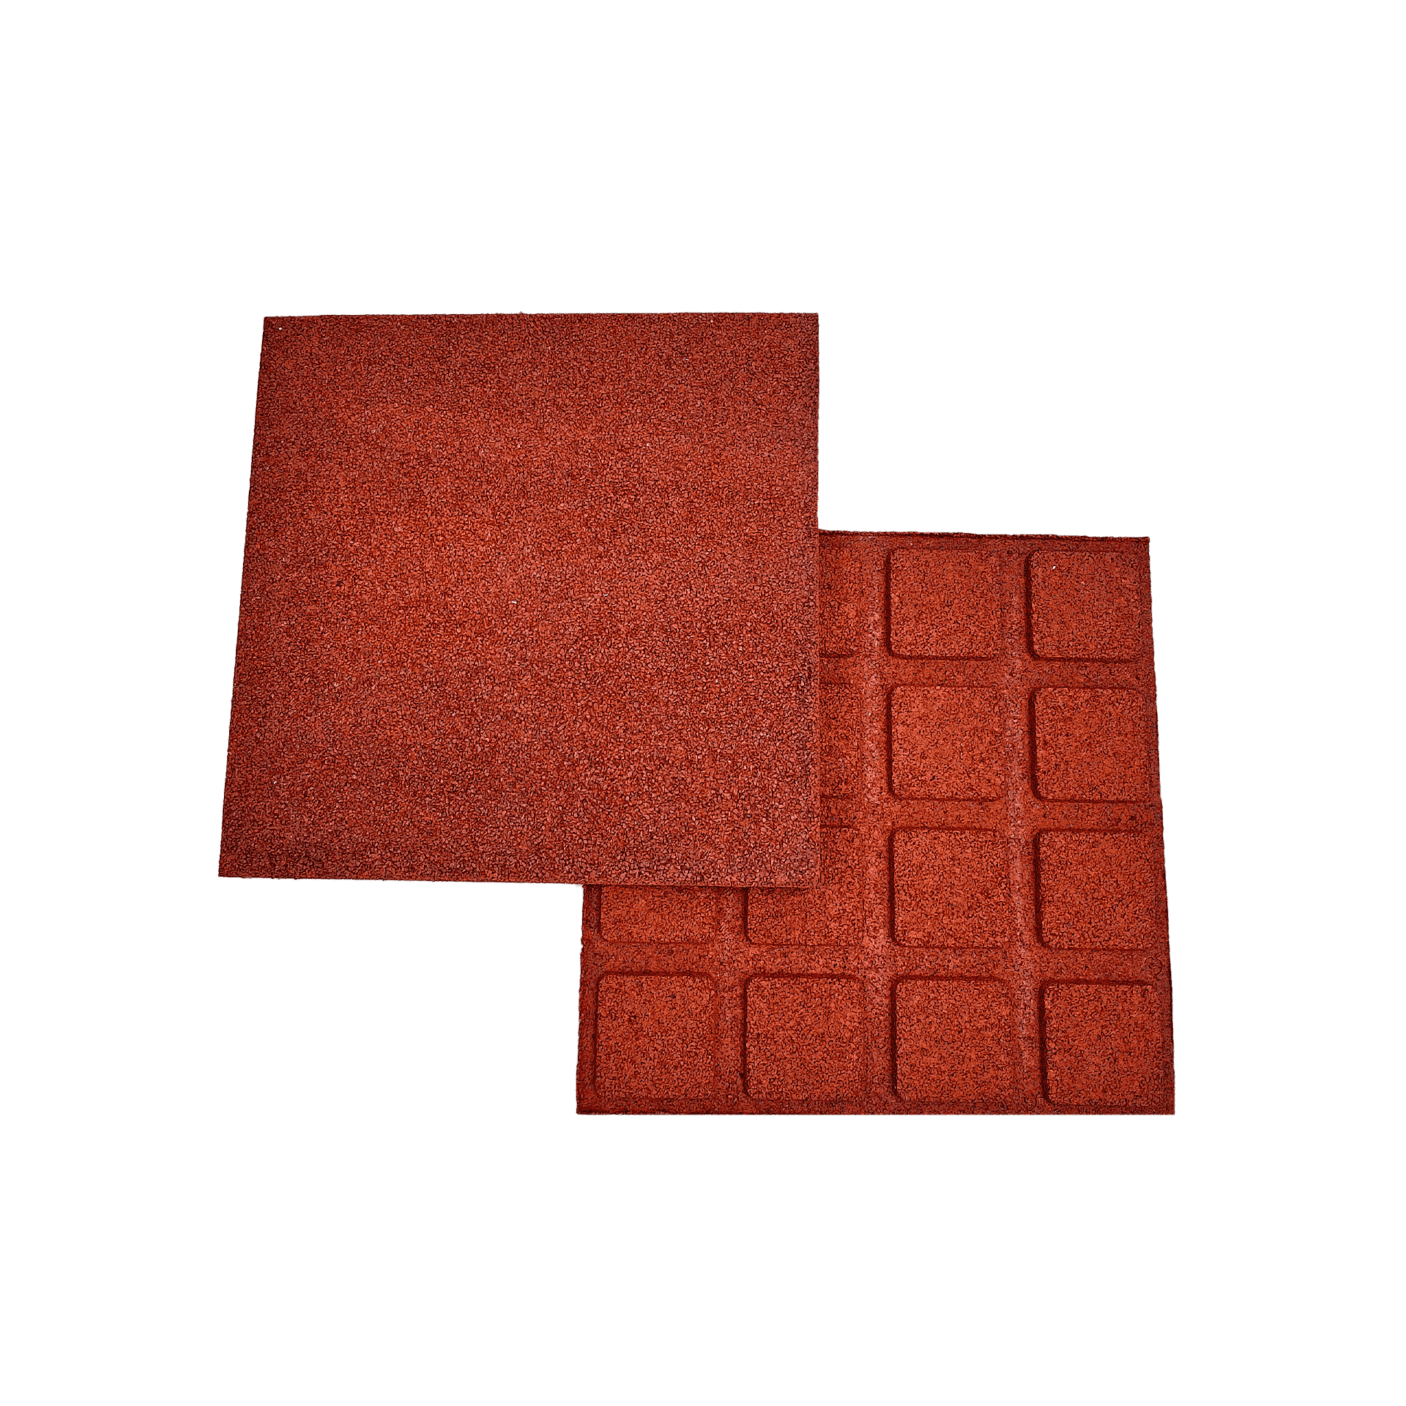 Laste mänguväljakute kummist põrandakate 40 mm (punane)